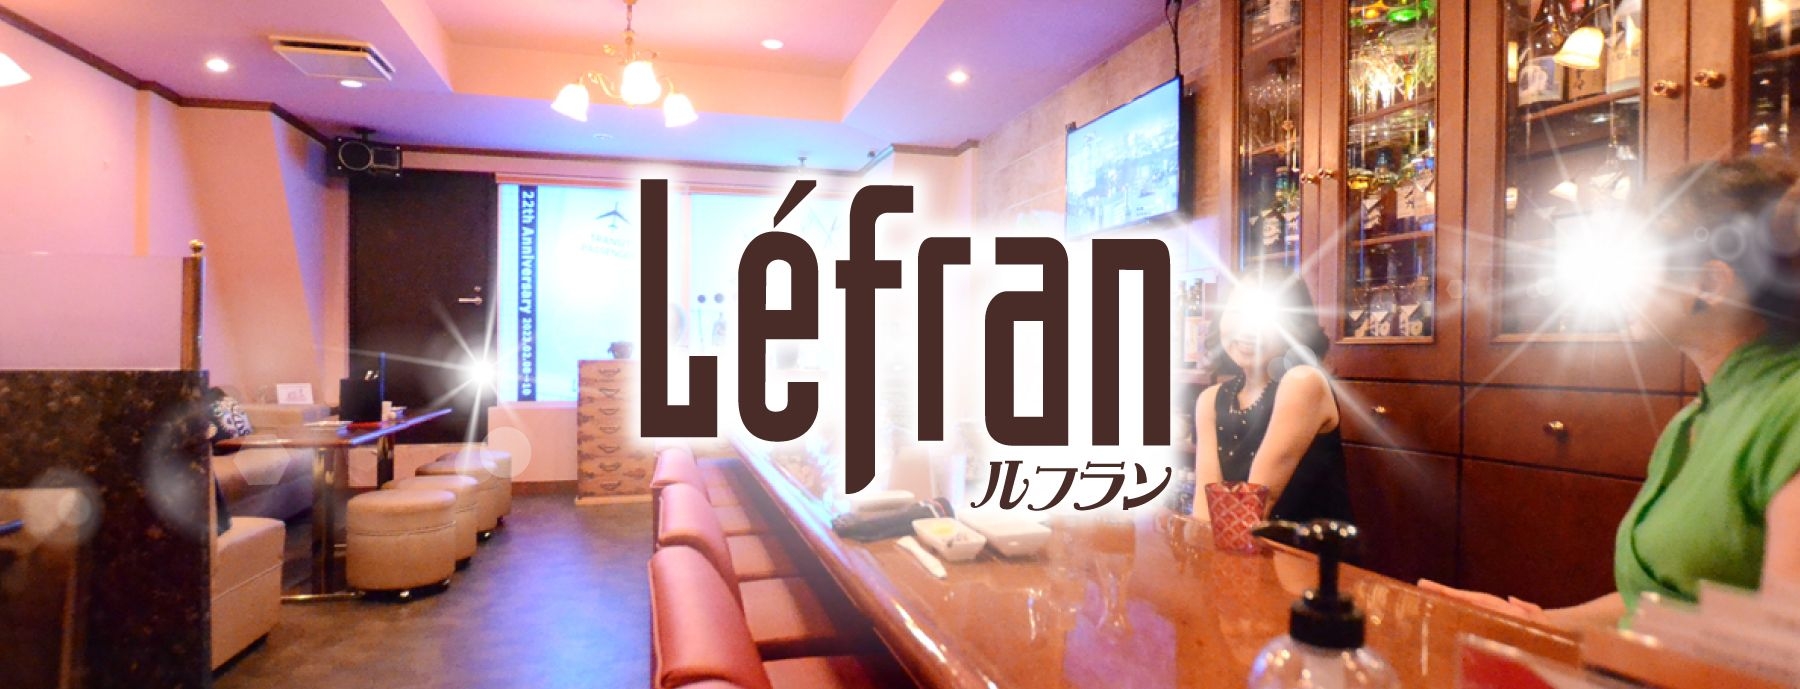 Lefran 〜ルフラン〜